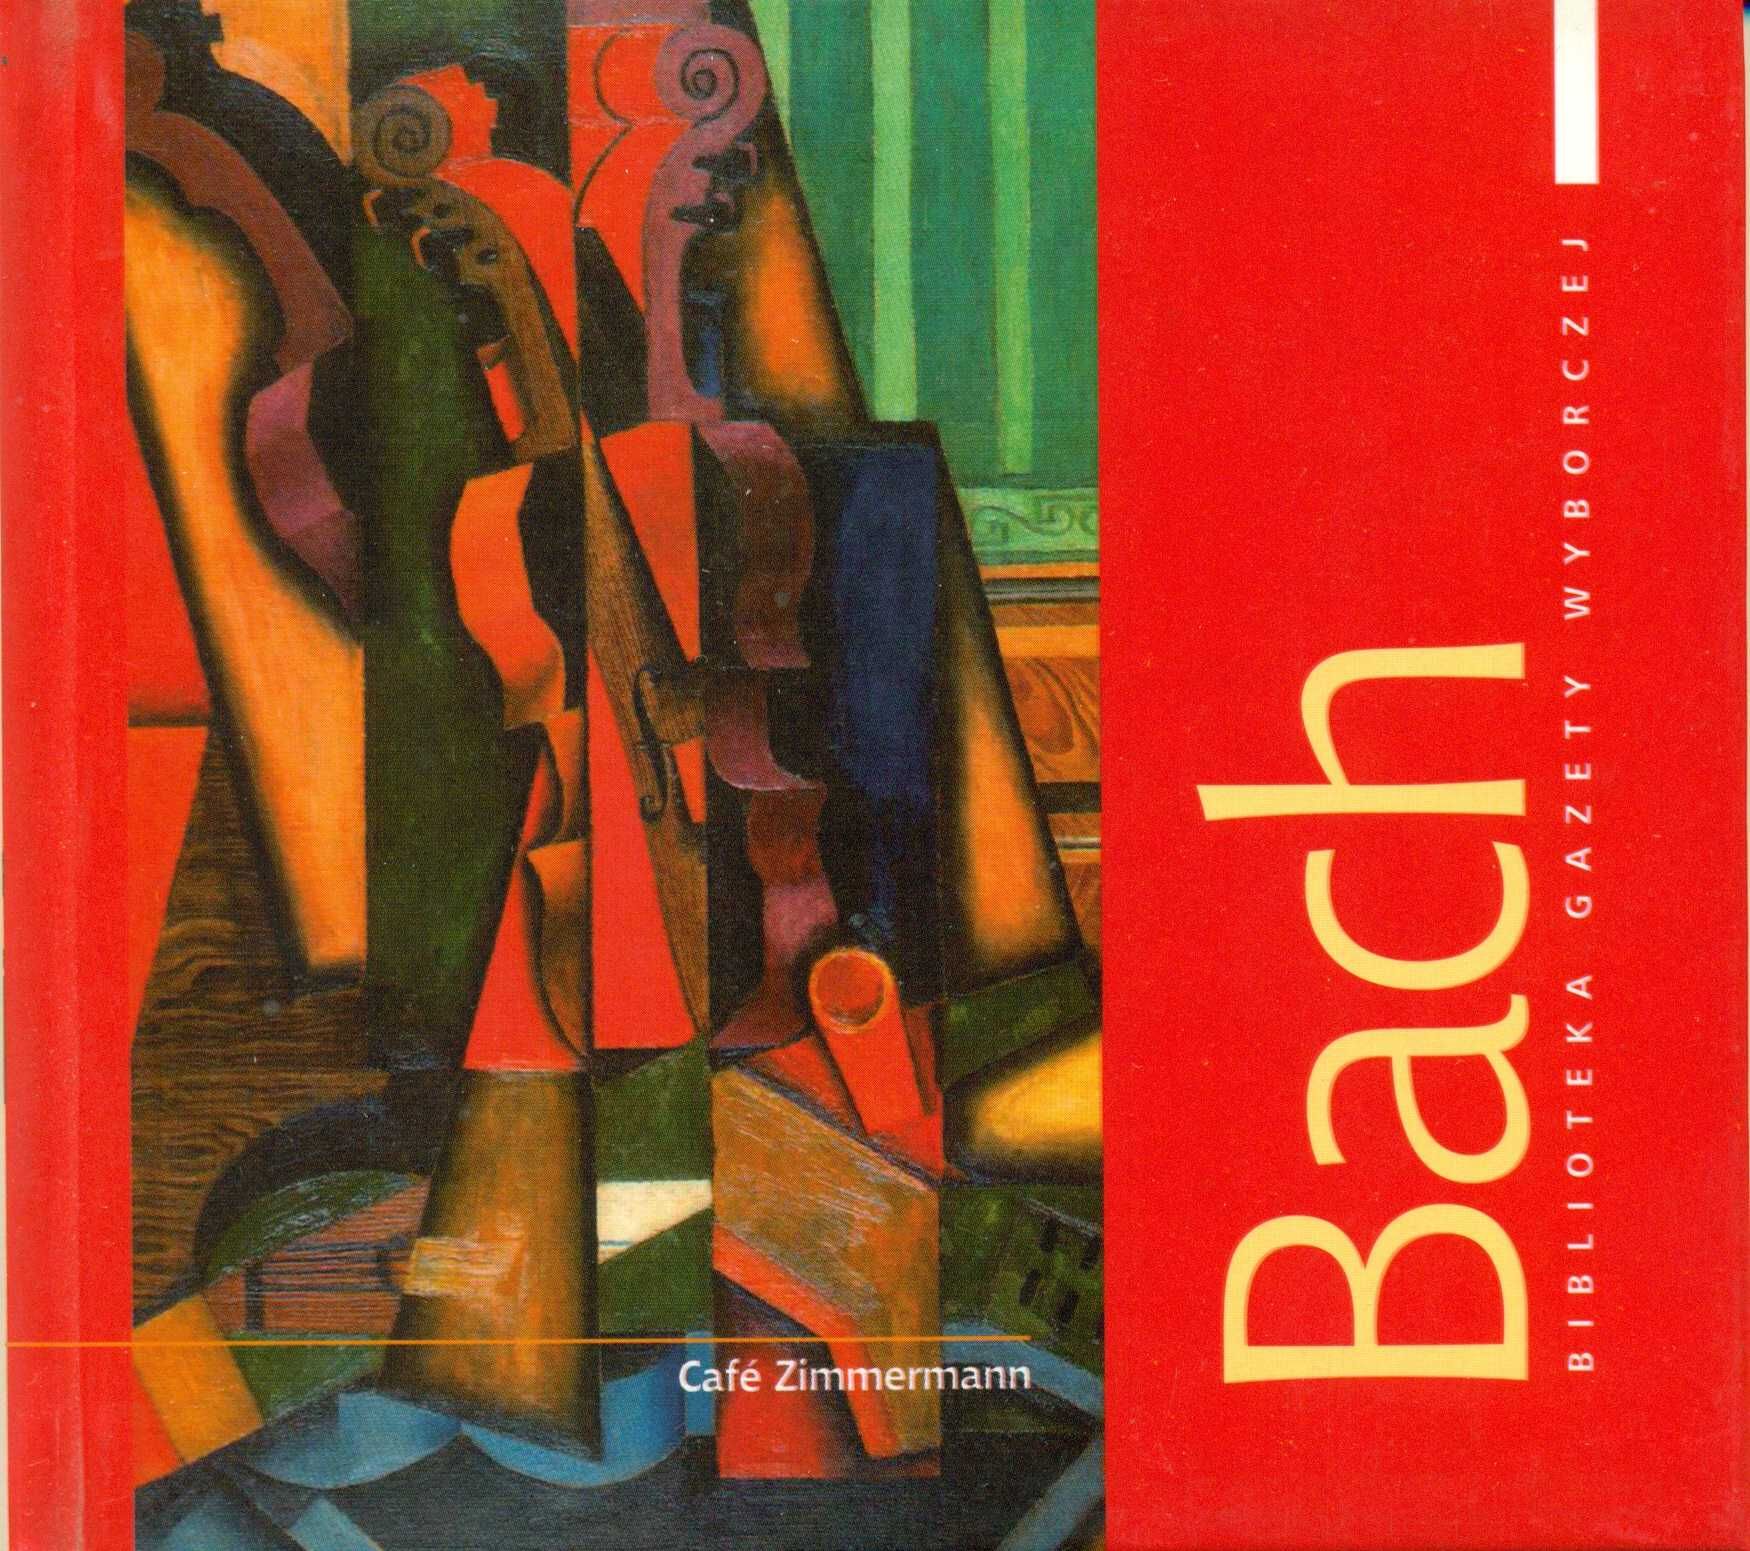 Bach, seria Wielcy Kompozytorzy, biblioteka Gazety Wyborczej, CG